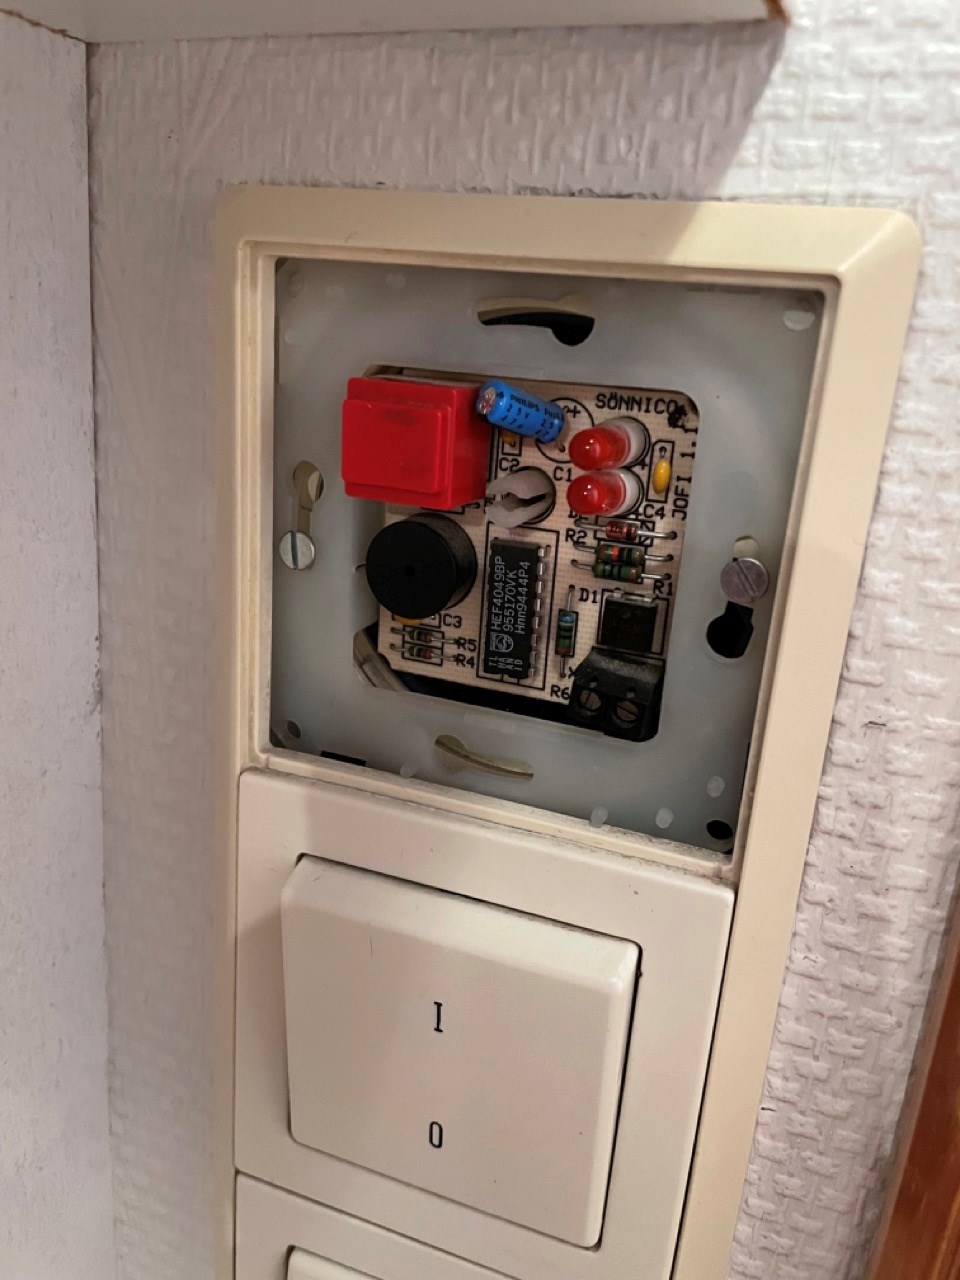 Installering av Ubiquiti G4 Doorbell i Friedland ringeklokke - IMG_5428 Large.jpeg - tbygger